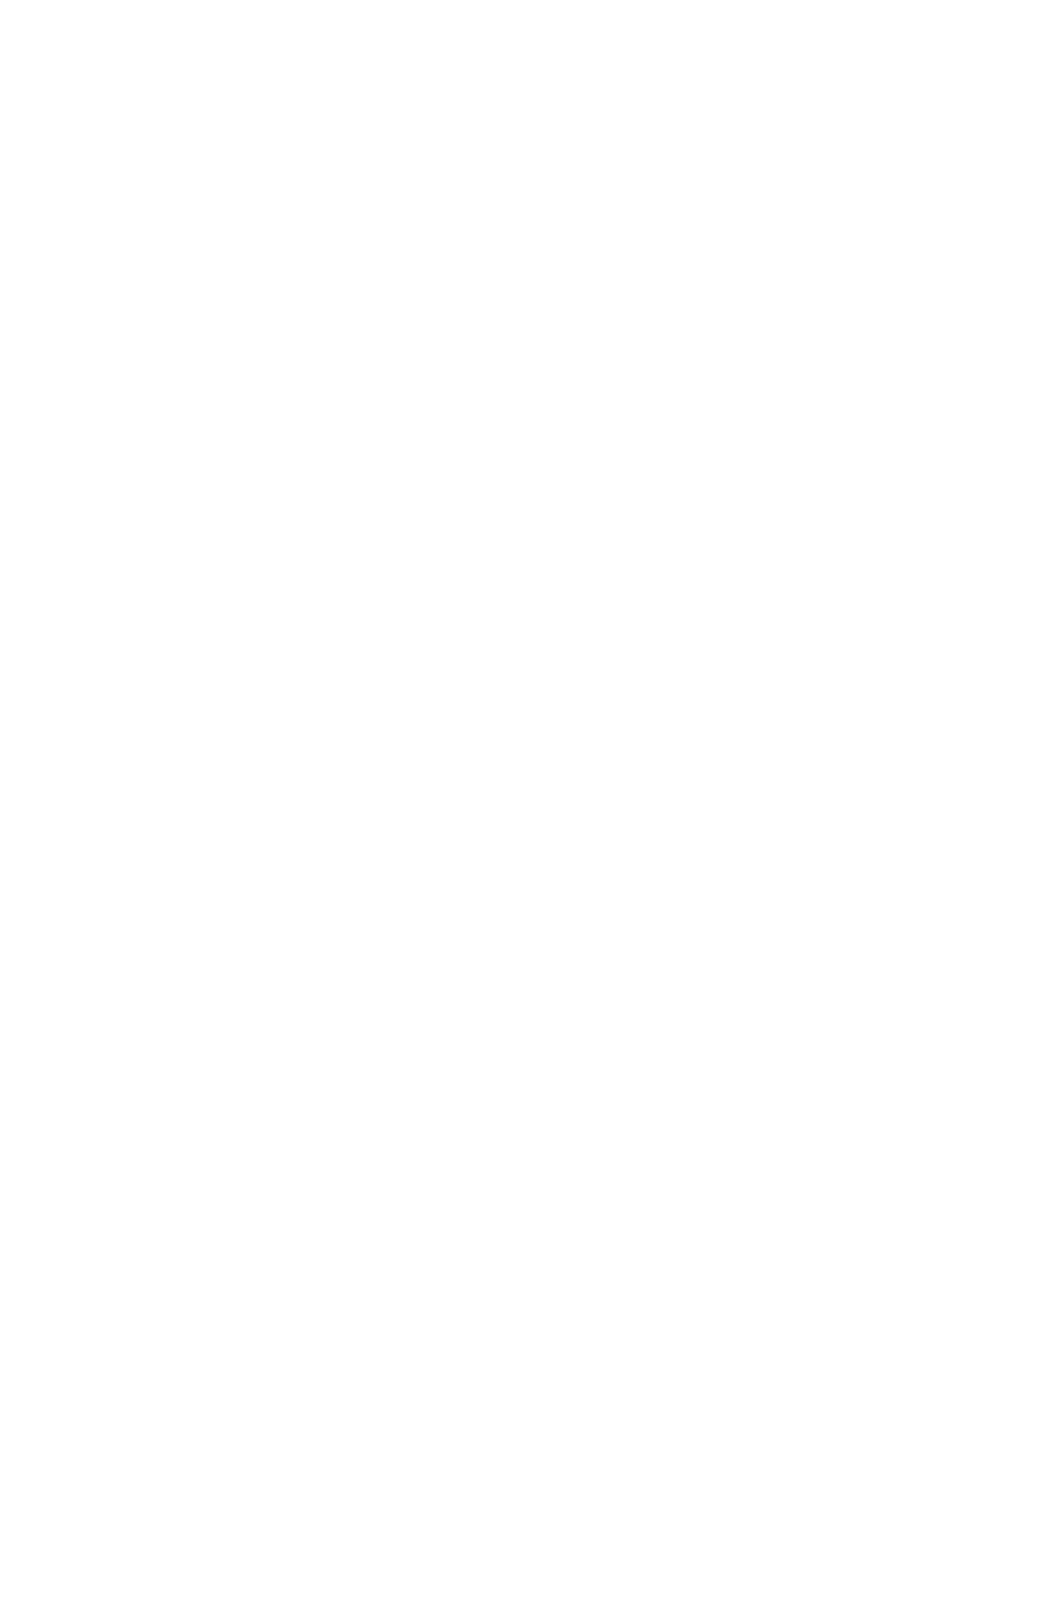 元andymori小山田壮平、初のソロアルバム「THE TRAVELING LIFE」詳細発表サムネイル画像!